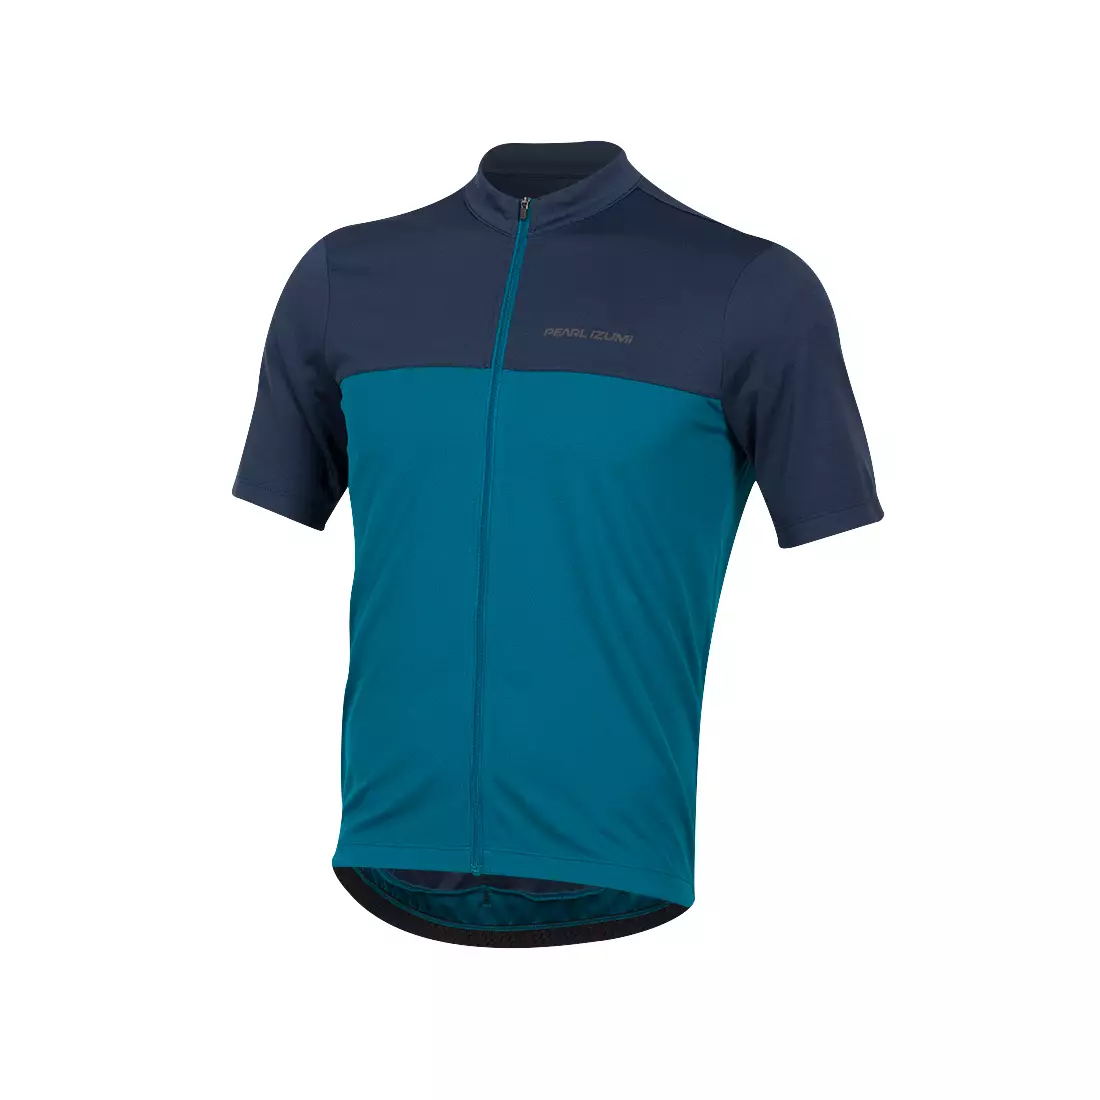 Pánsky cyklistický dres PEARL IZUMI QUEST, modrý 11121909